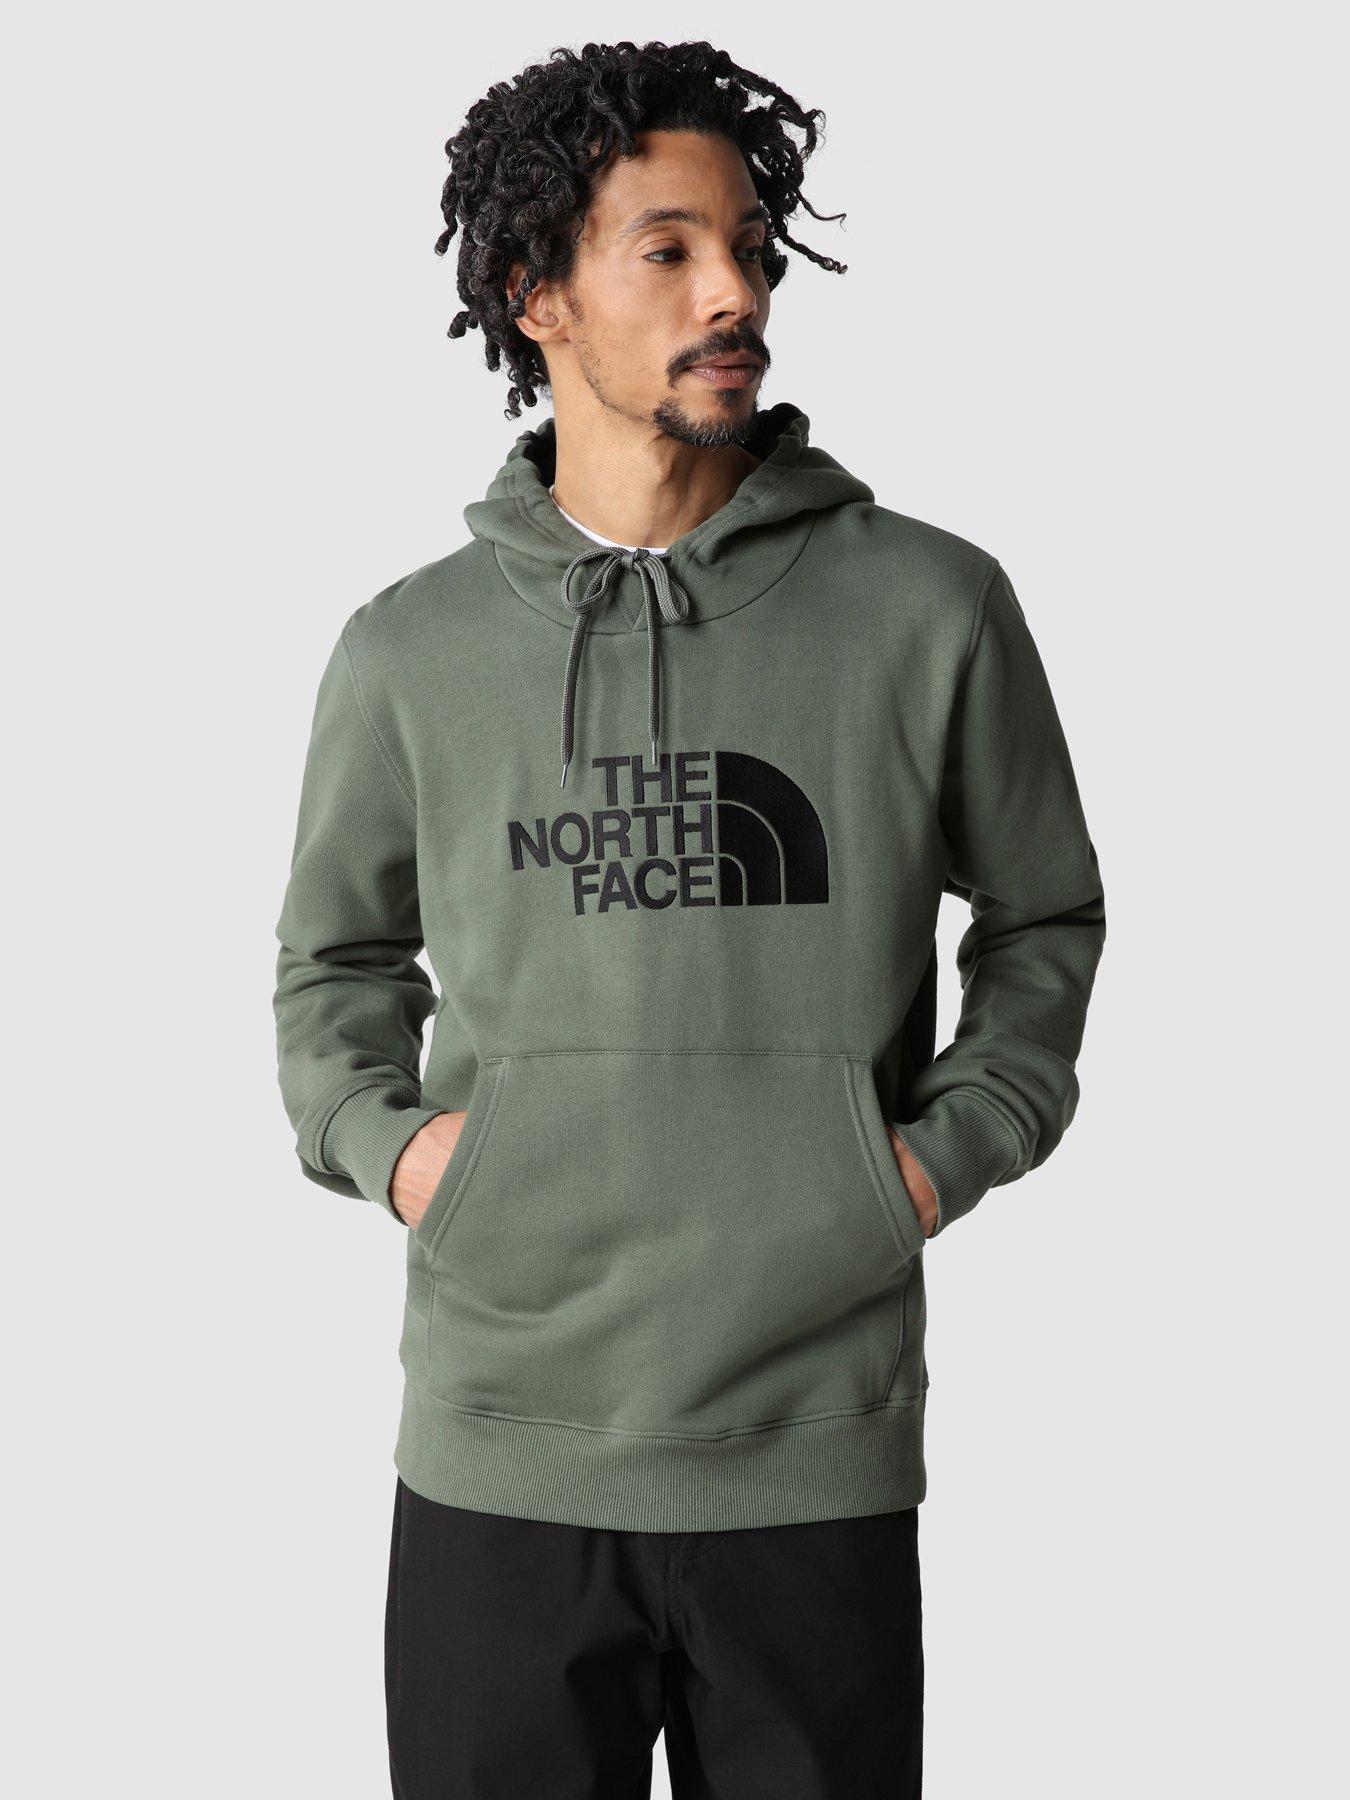 NINDO Hoodie for Men Lightweight Fleece Sweatshirt 